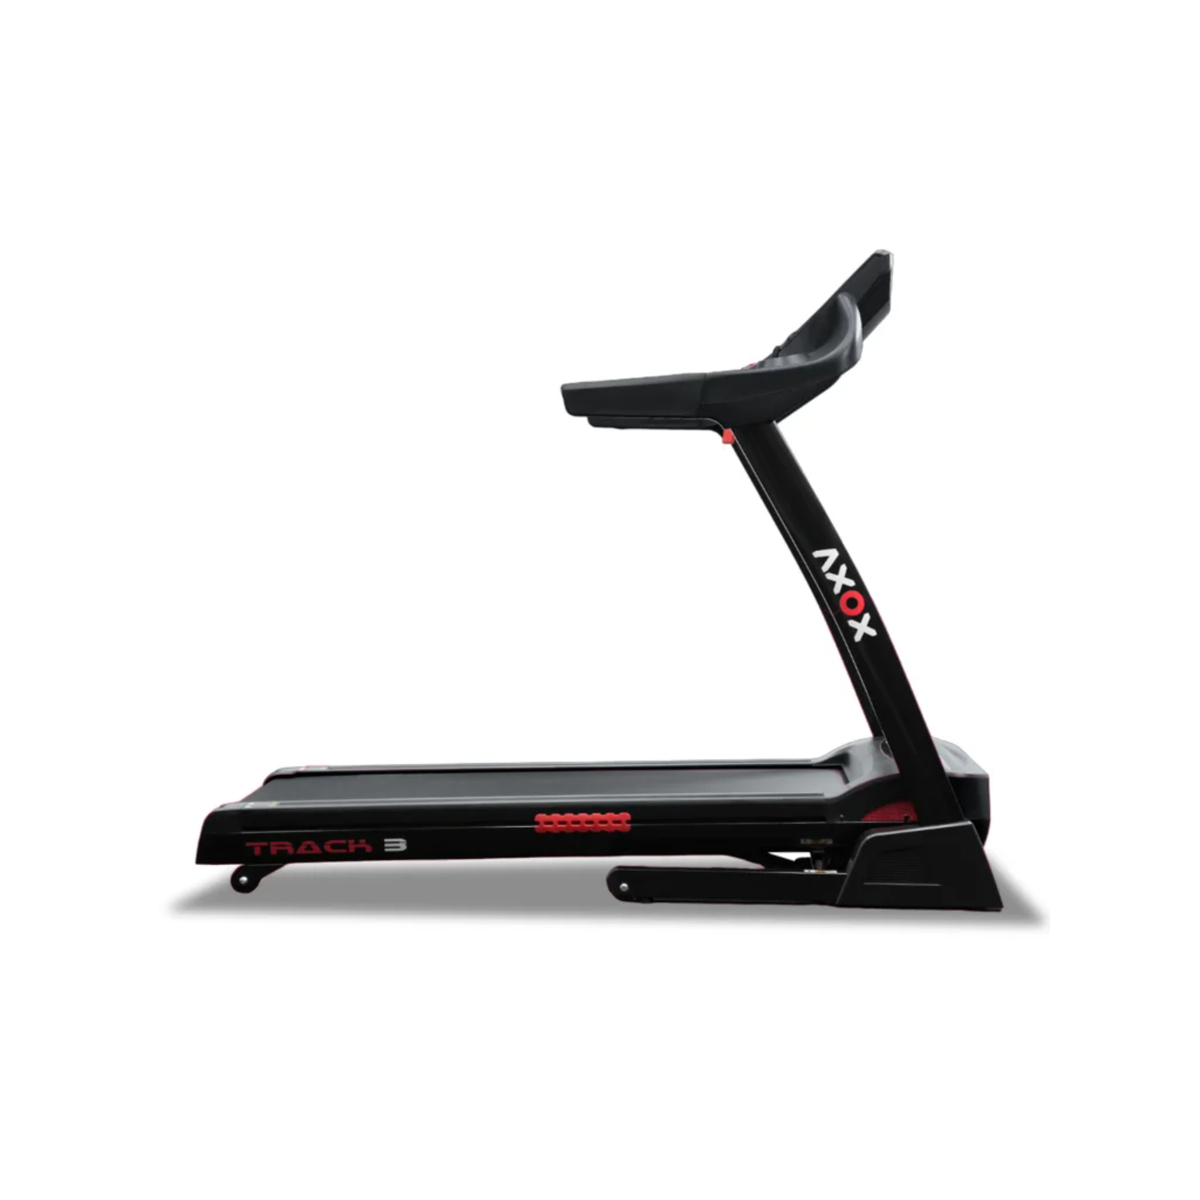 Axox Fitness Treadmill Track 3 with Smart Display, Black, AX-TRACK-3